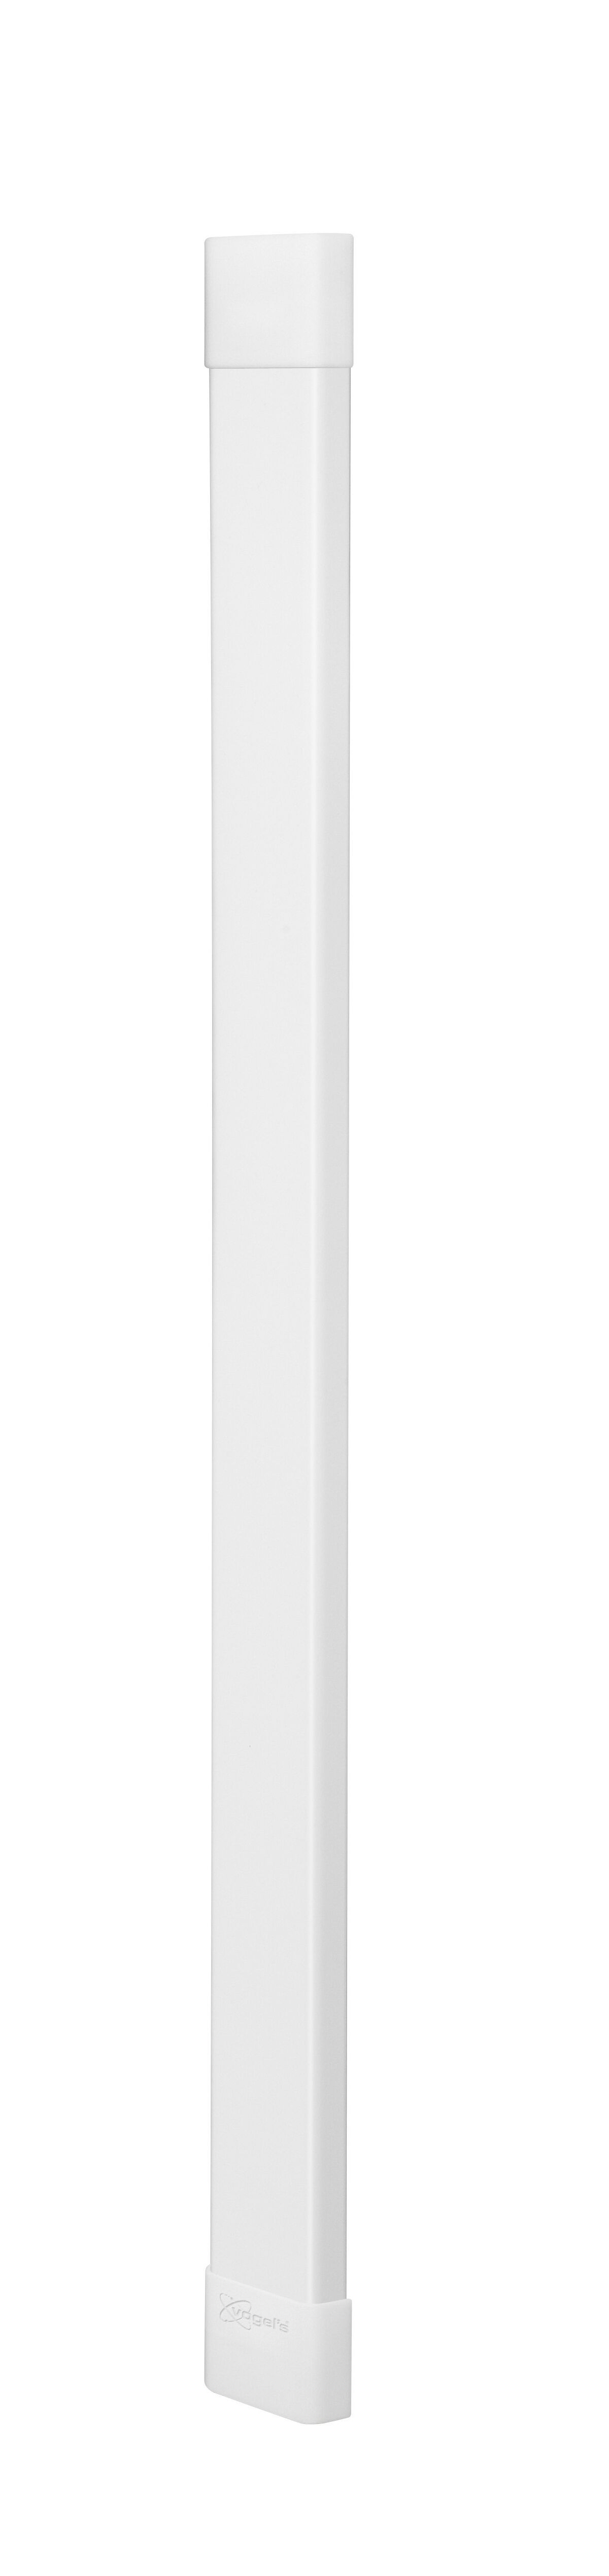 Vogel's CABLE 8 Kabelkanal (Weiß) - Max. Anzahl der Haltekabel: Bis zu 8 Kabel - Länge: 94 cm - Product